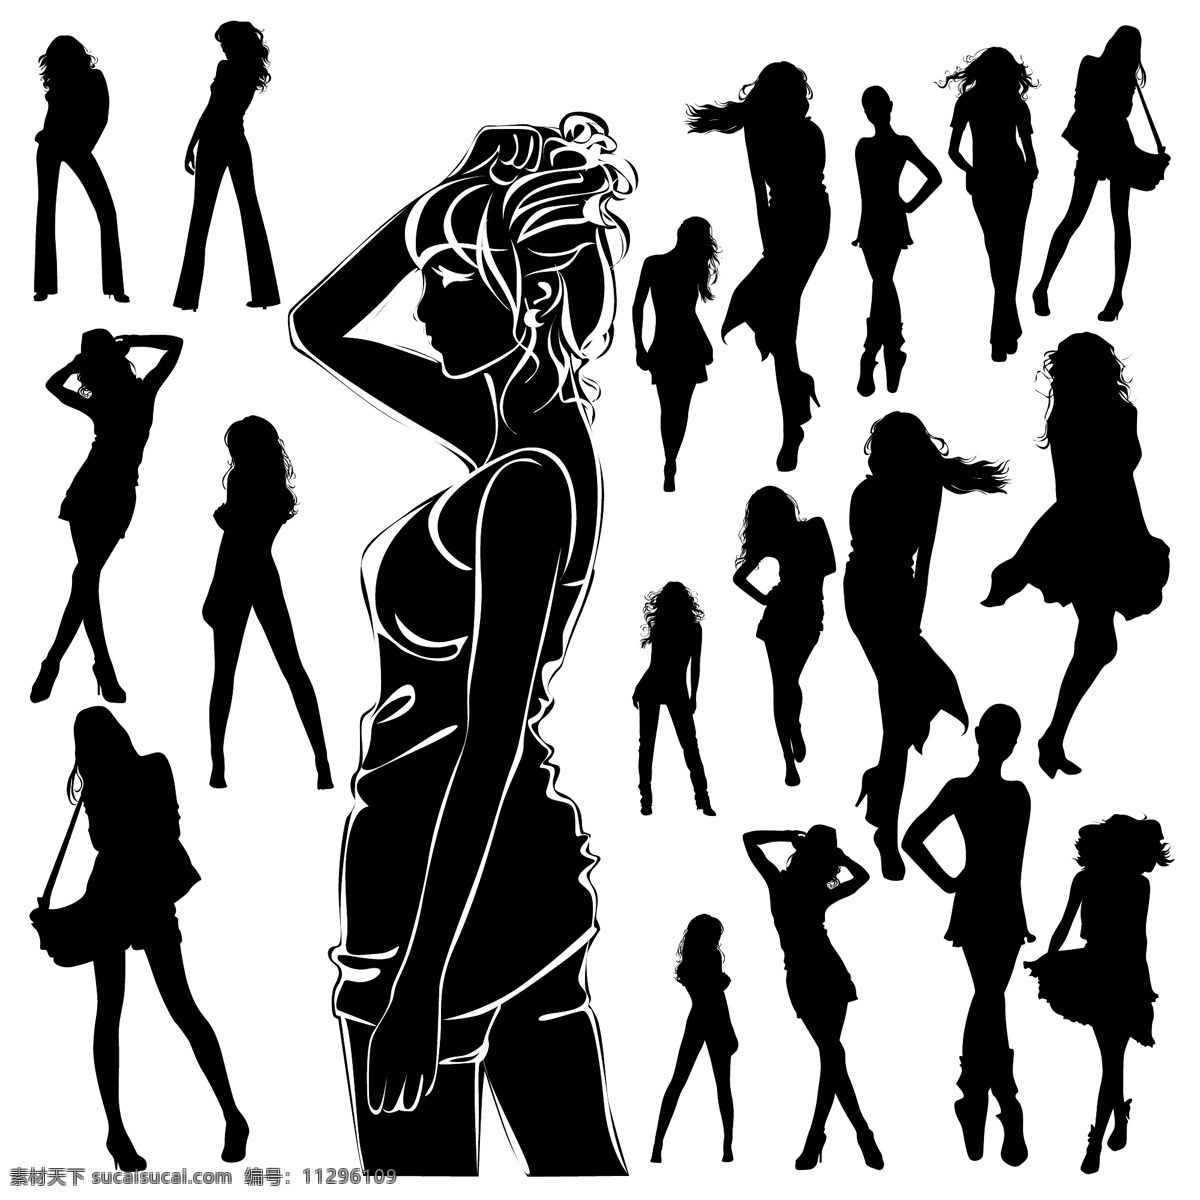 时尚 性感 女性人物 剪影 矢量 女性 人物 黑白 剪影素材 人物图库 生活人物